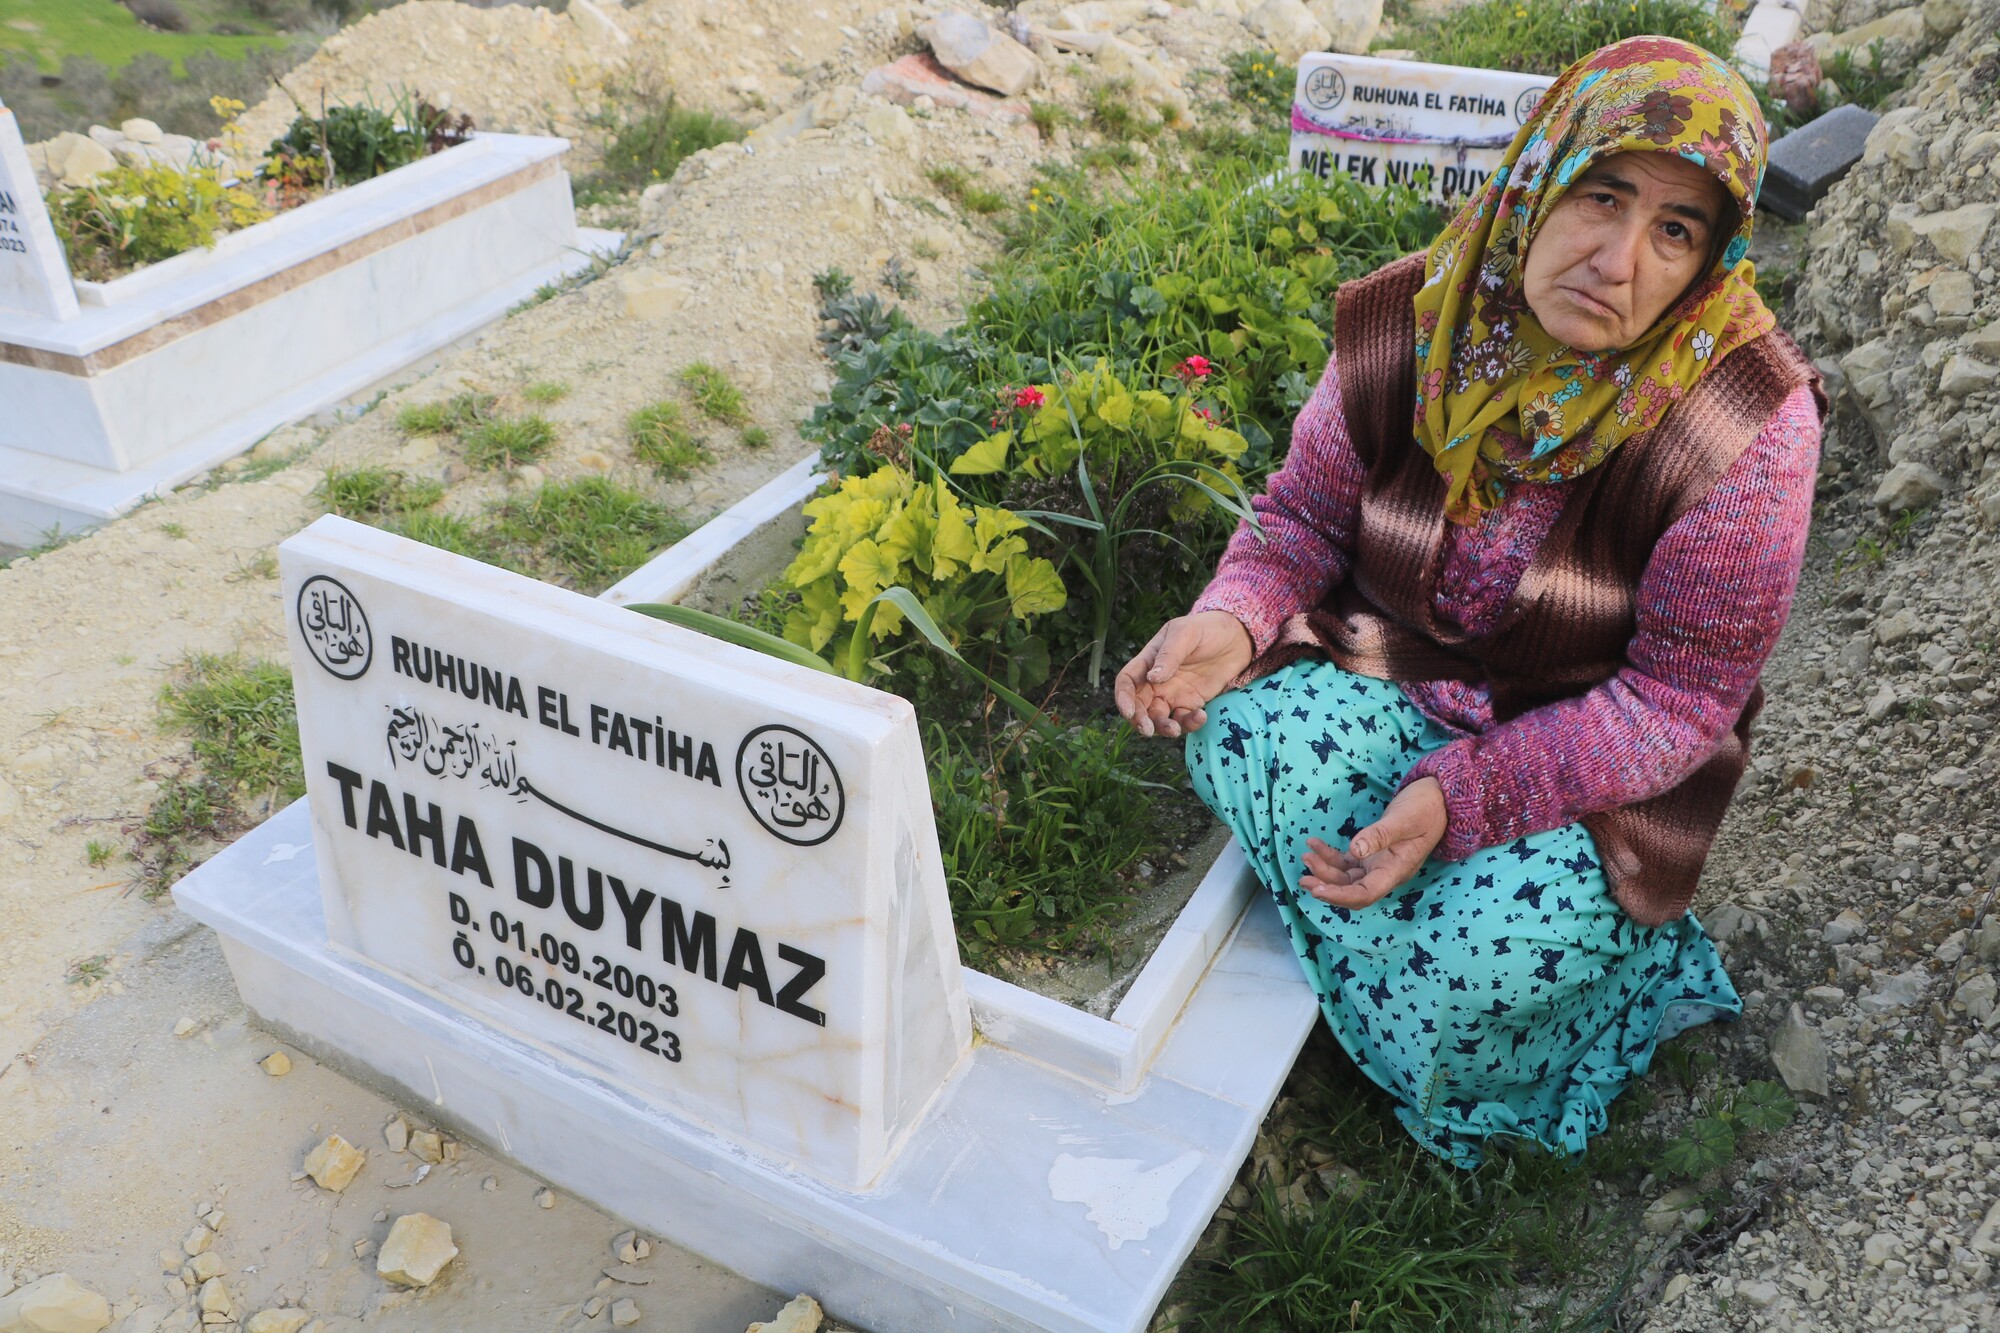 Genç Gazete Sosyal Medya Fenomeni Taha Duymaz'ın Annesinin Evlat Acısı (4)